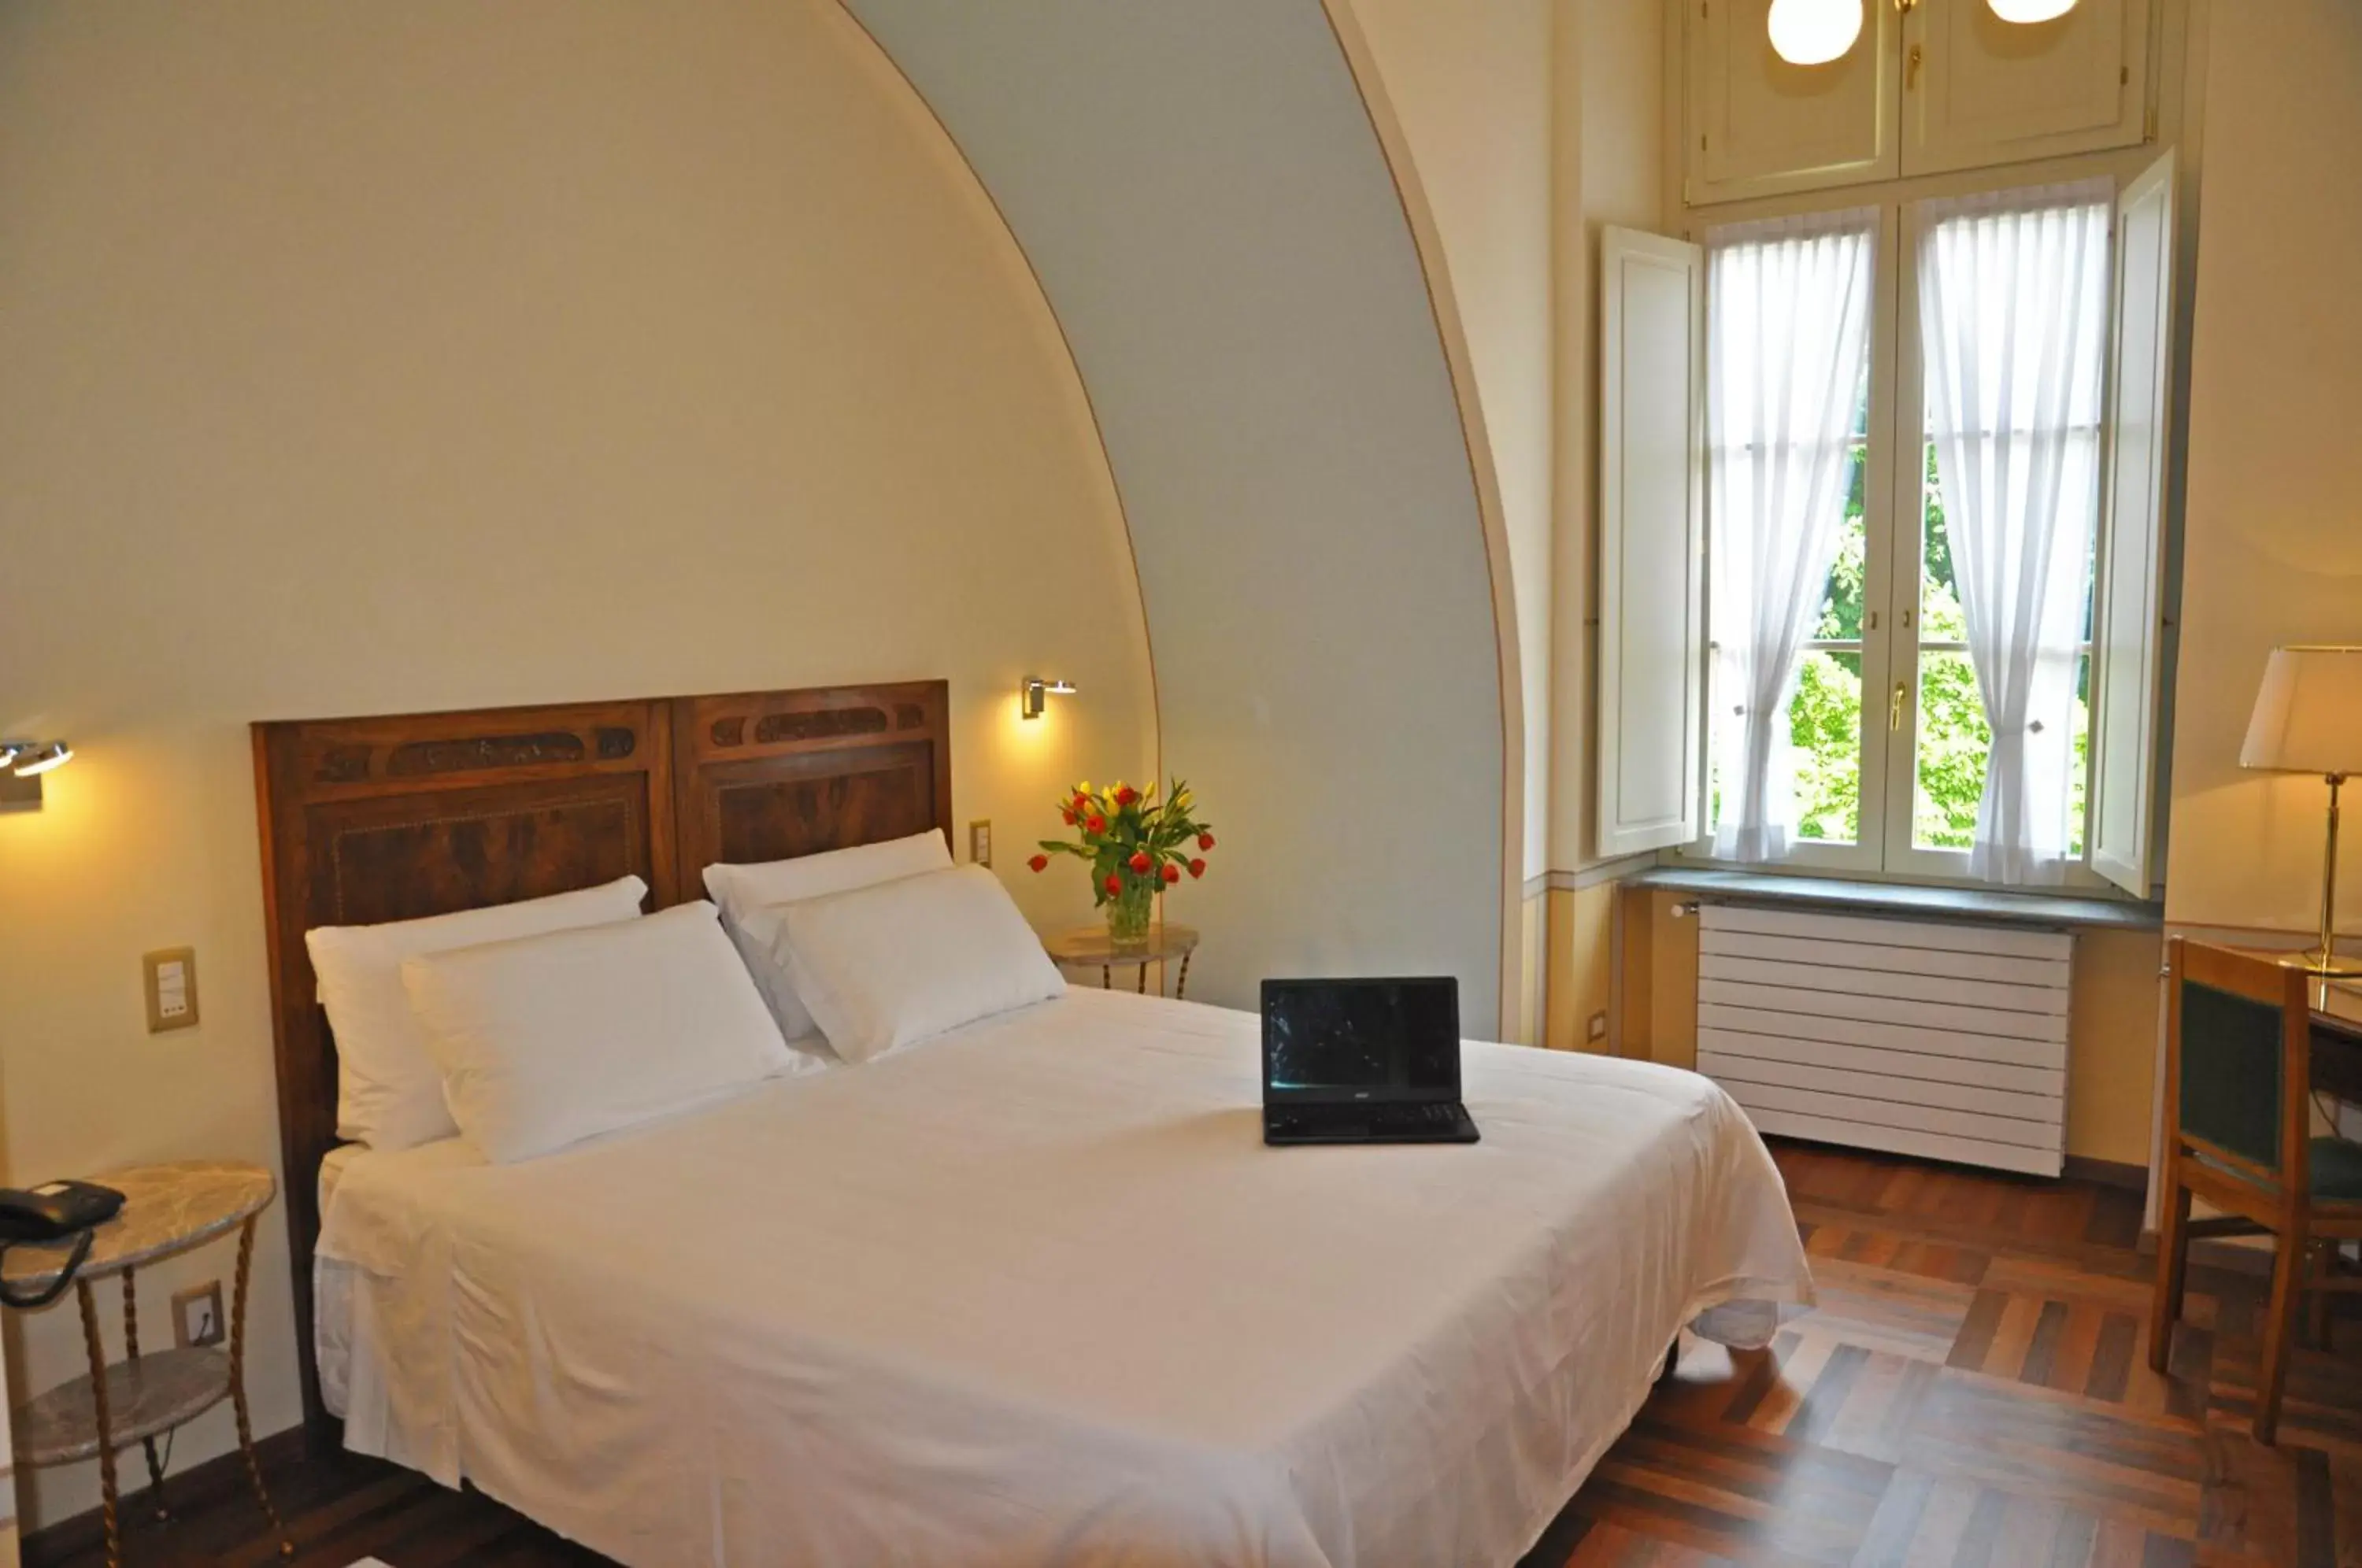 Bed, Room Photo in Hotel Roma e Rocca Cavour